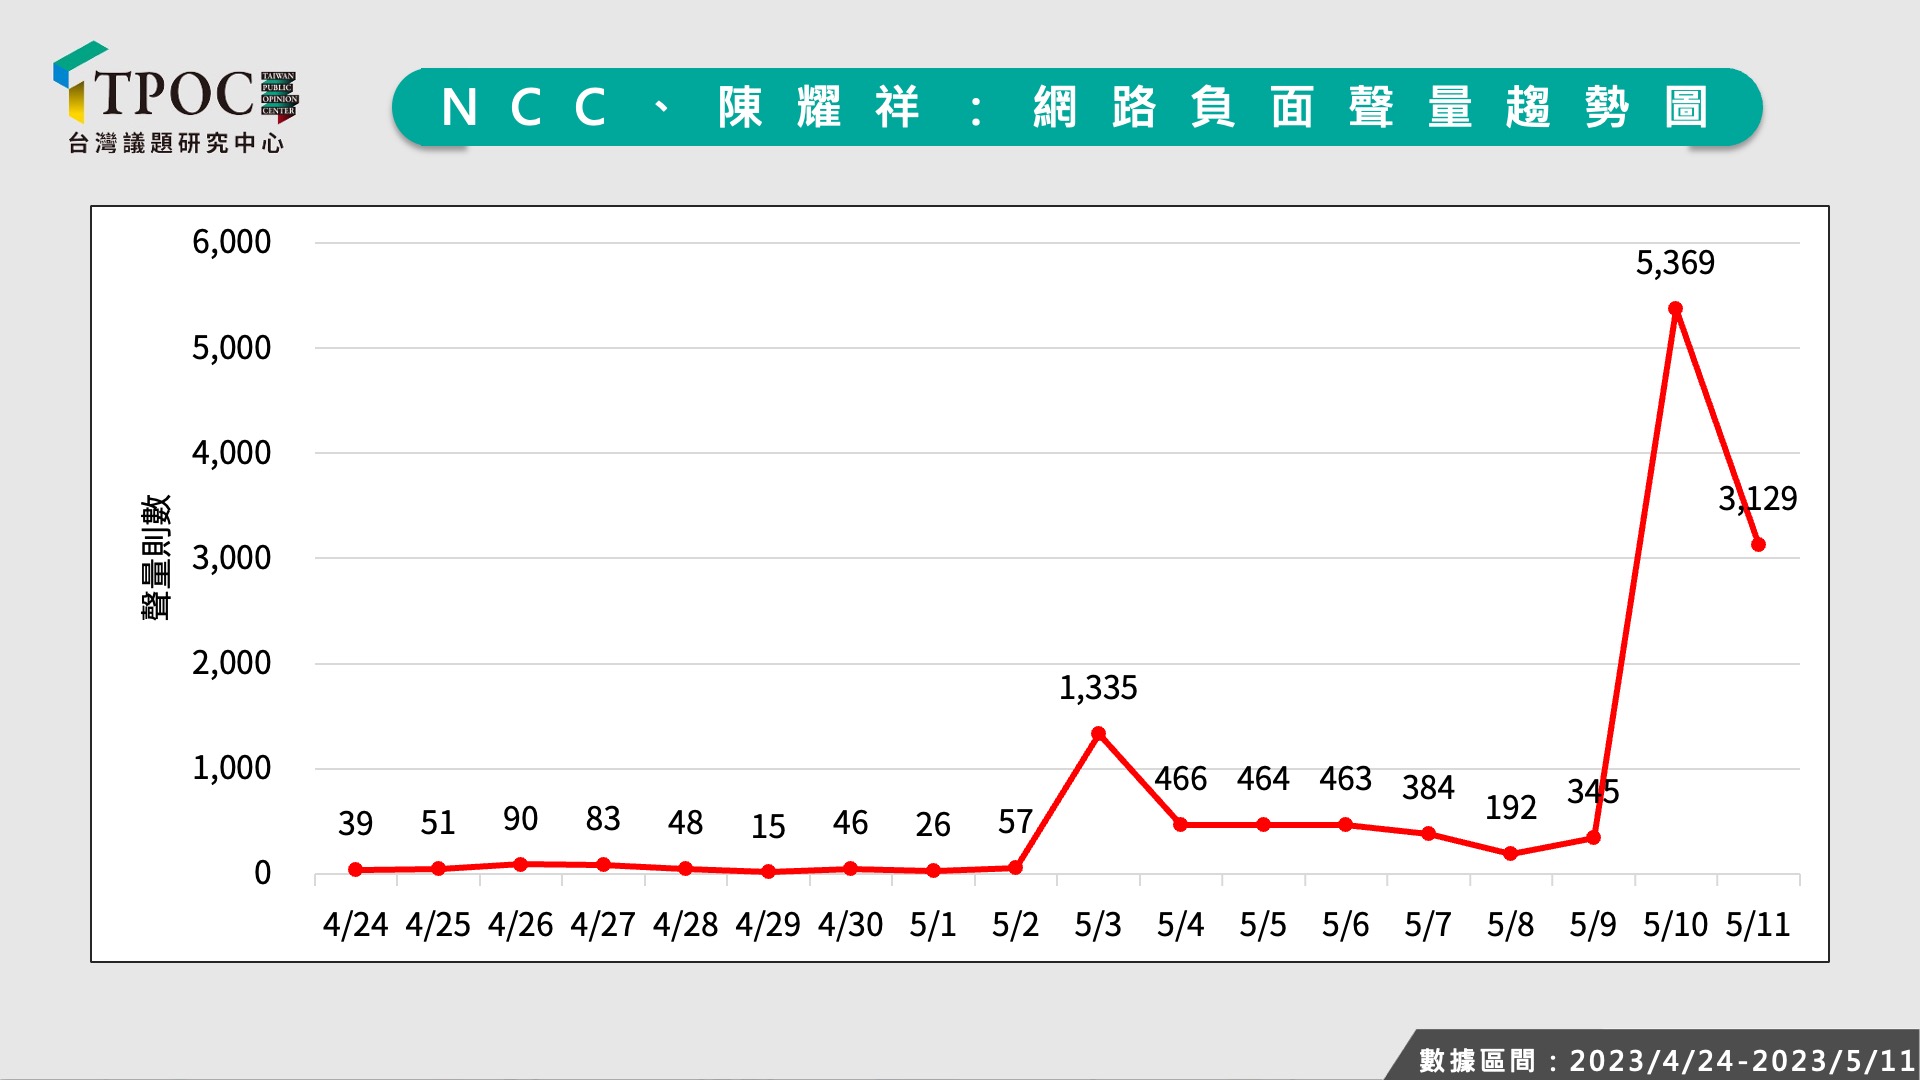 輿情風向一面倒「挺中天」 NCC與陳耀祥負聲量暴增15倍 - 台北郵報 | The Taipei Post